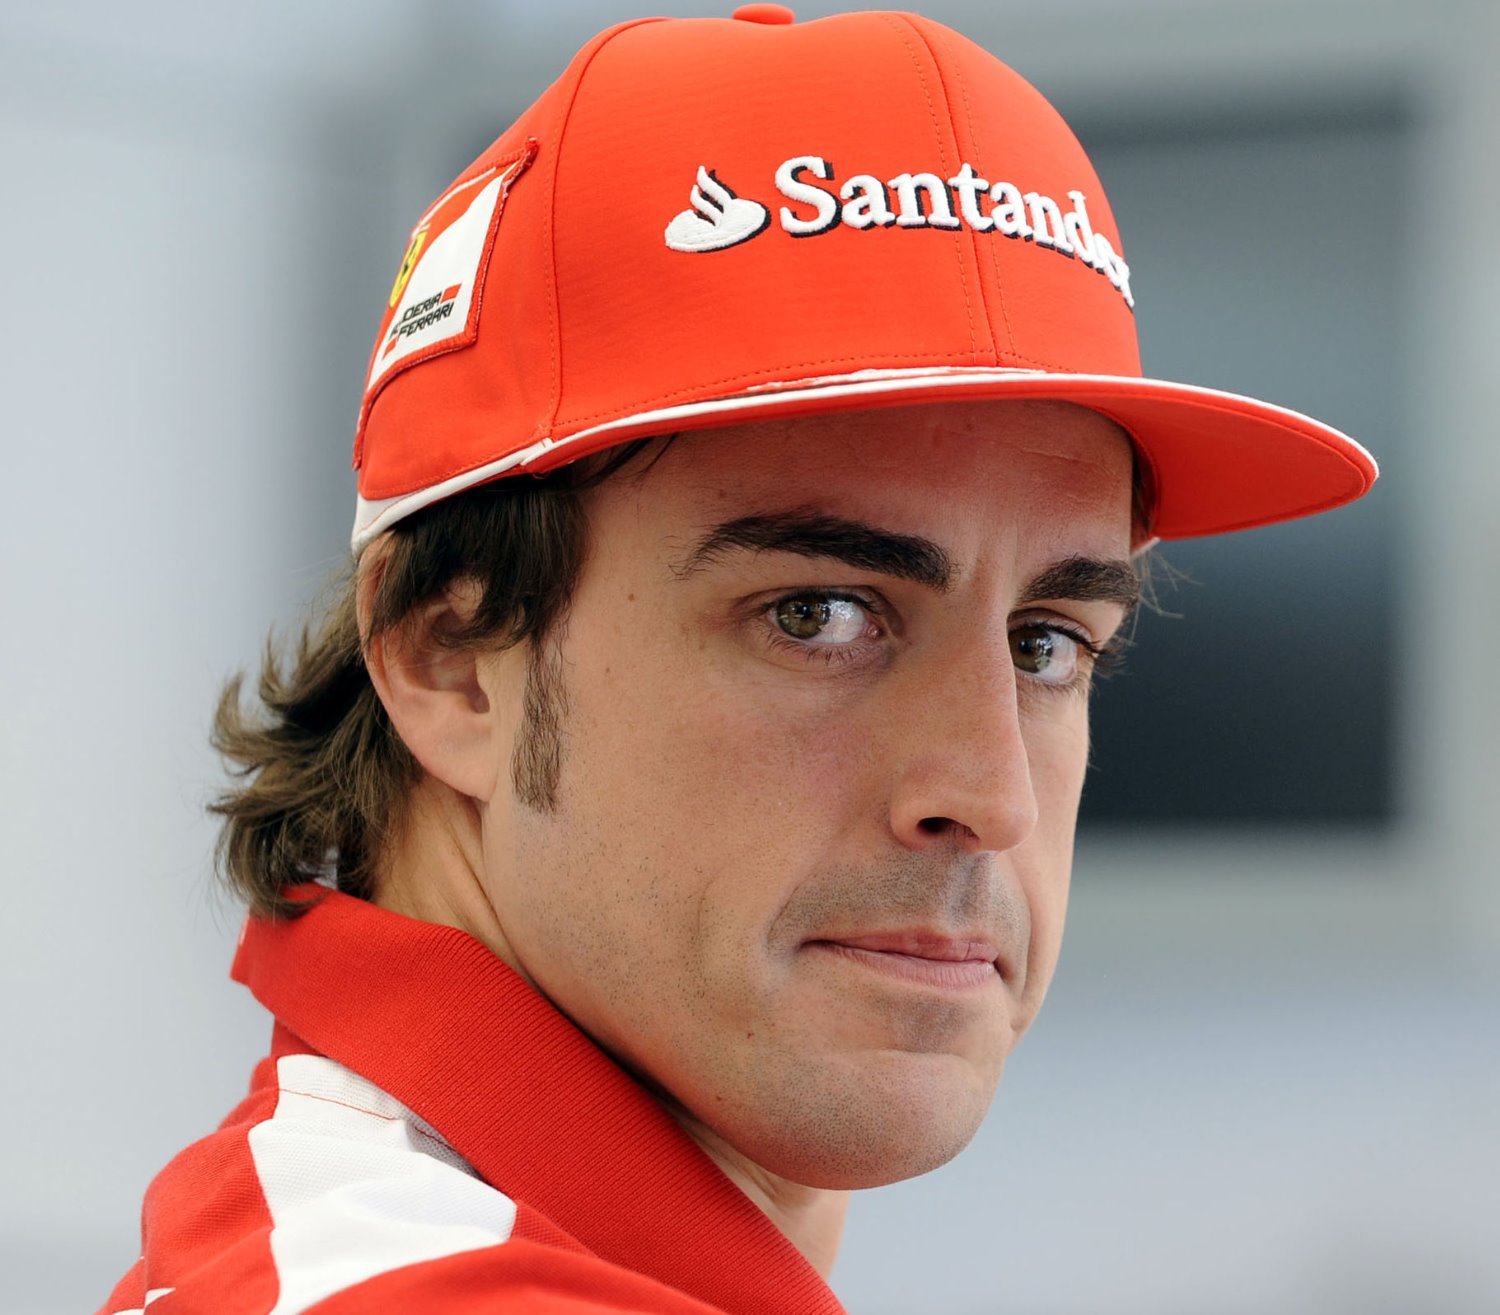 2012 when Alonso drove for Ferrari